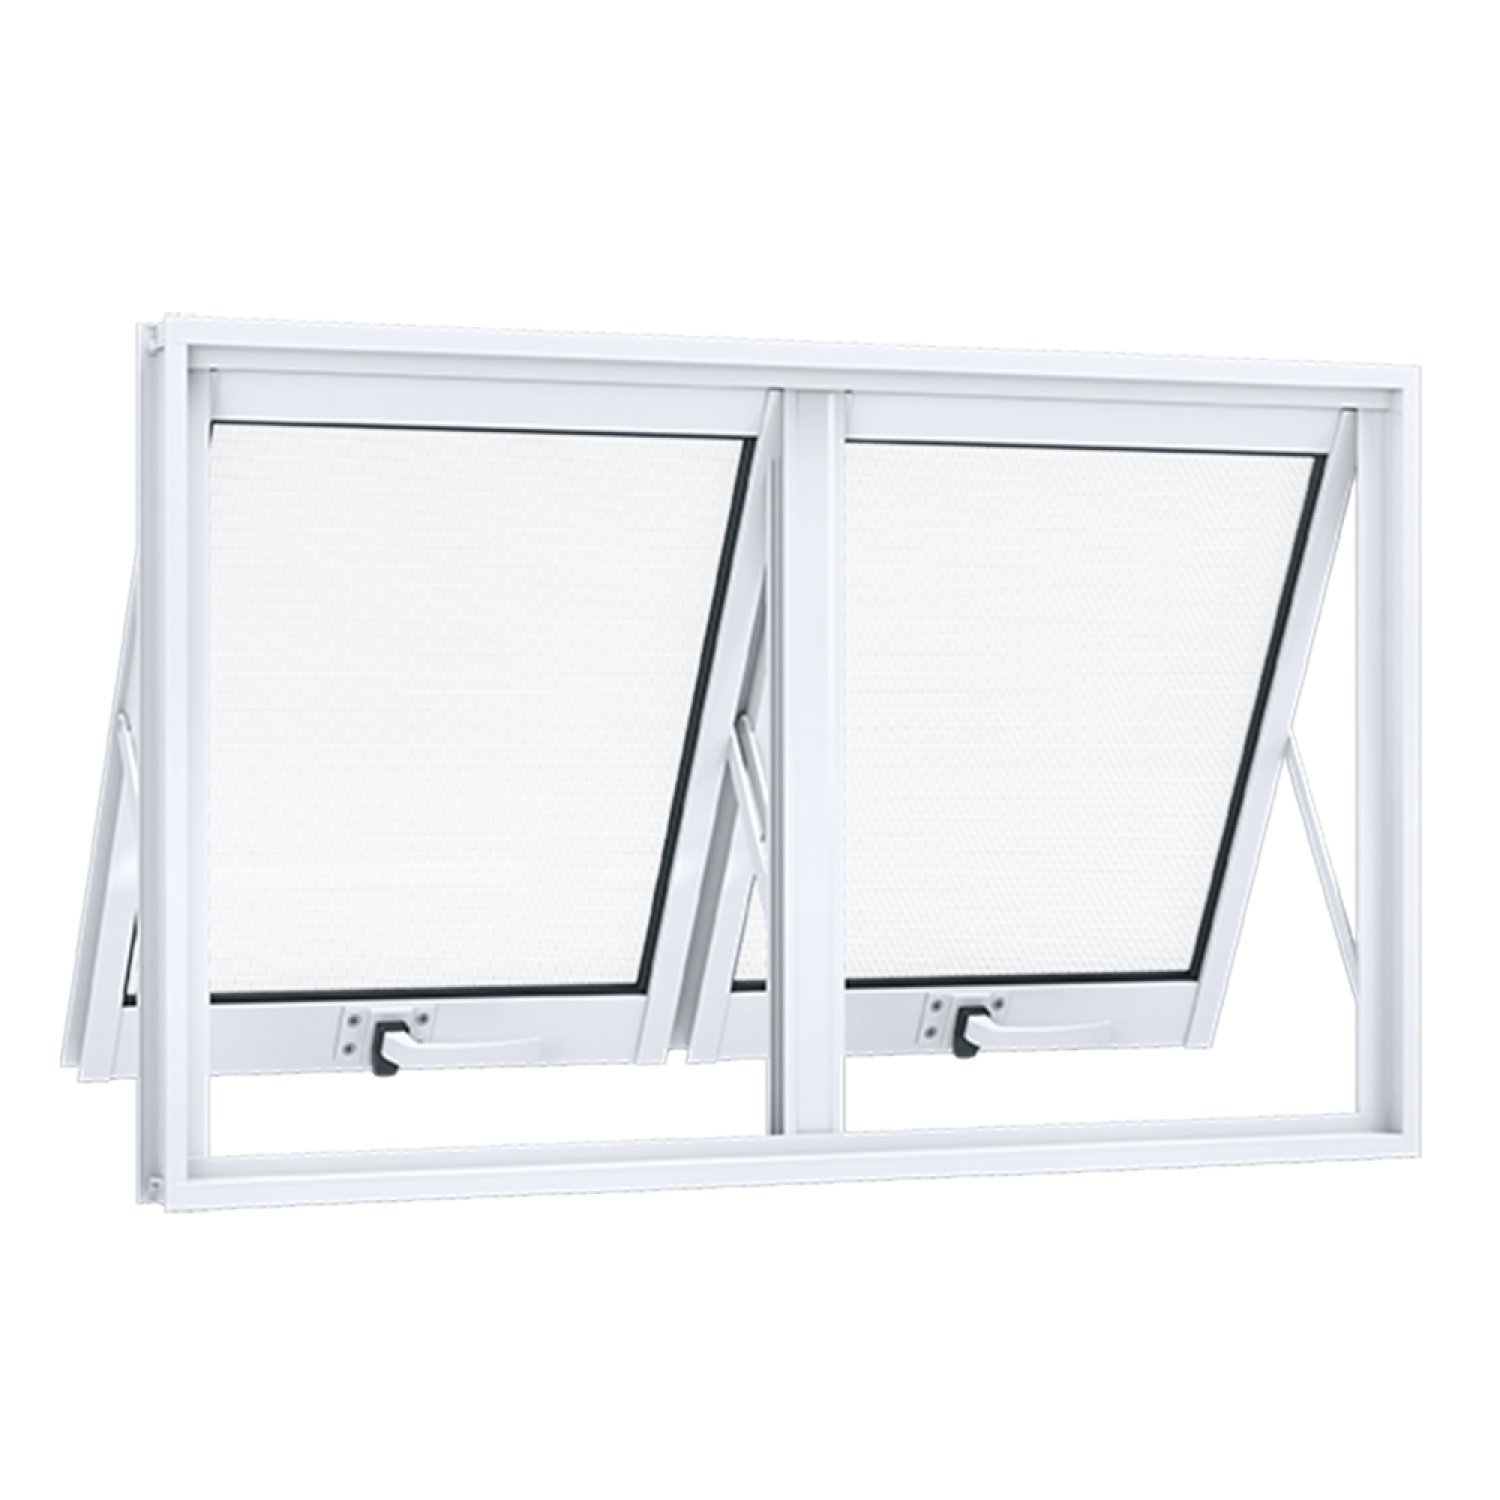 Janela de Aluminio Maximo-Ar 1 Folha com Vidro e Abertura Dupla Horizontal 60cmx118cm Lucasa 